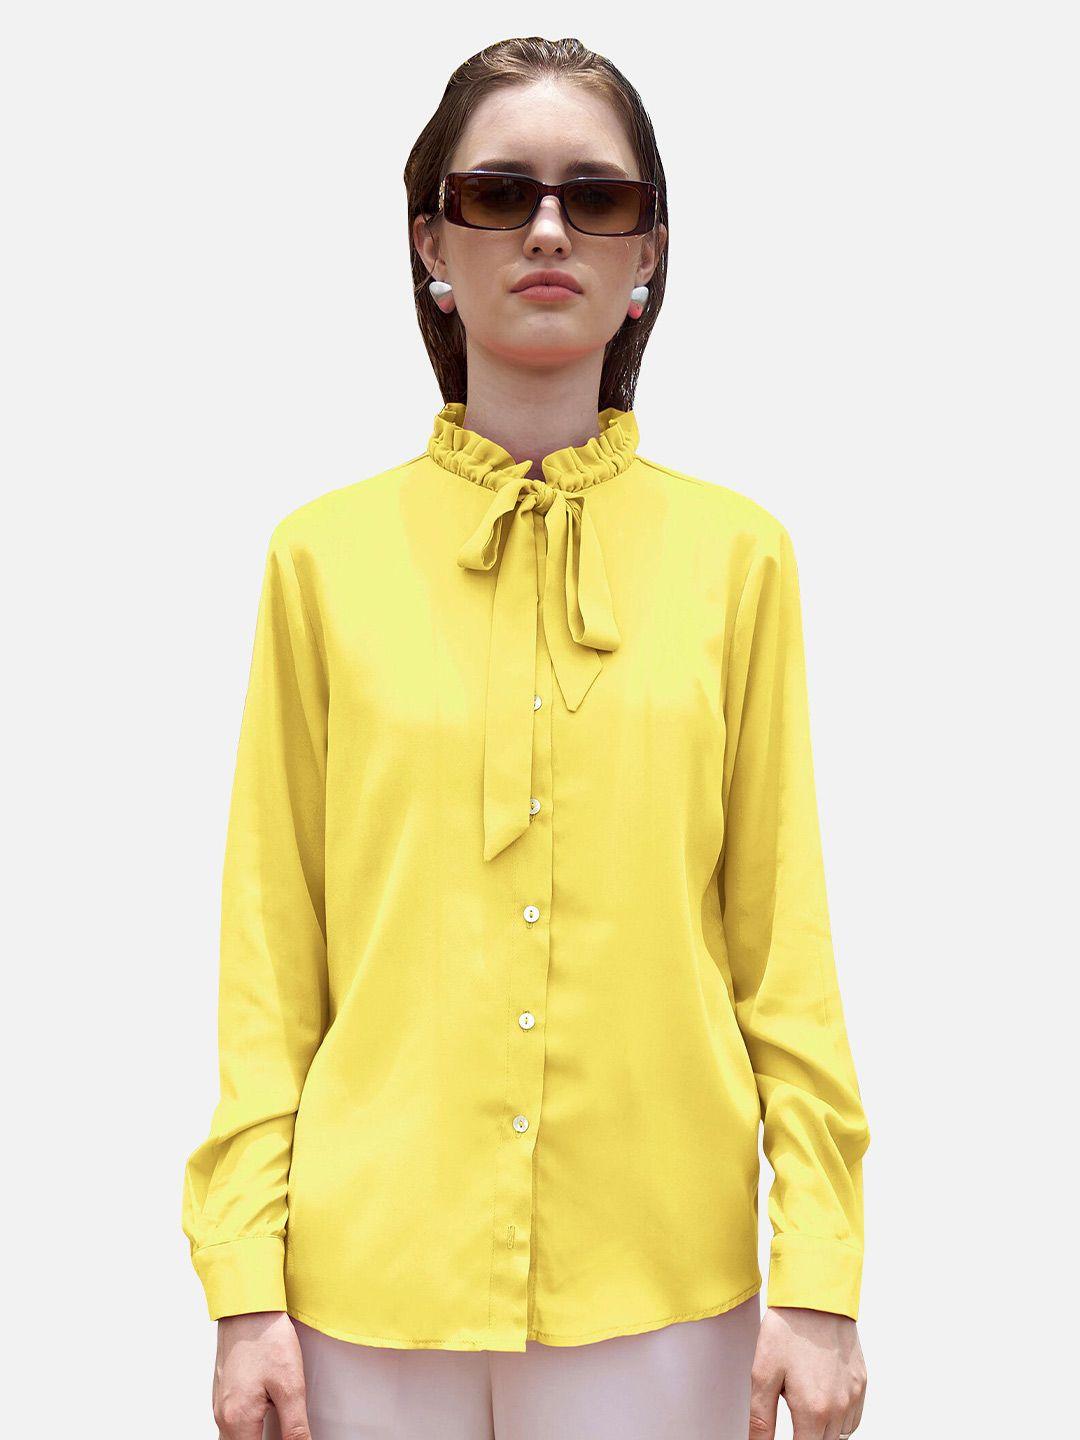 neofaa women yellow casual shirt